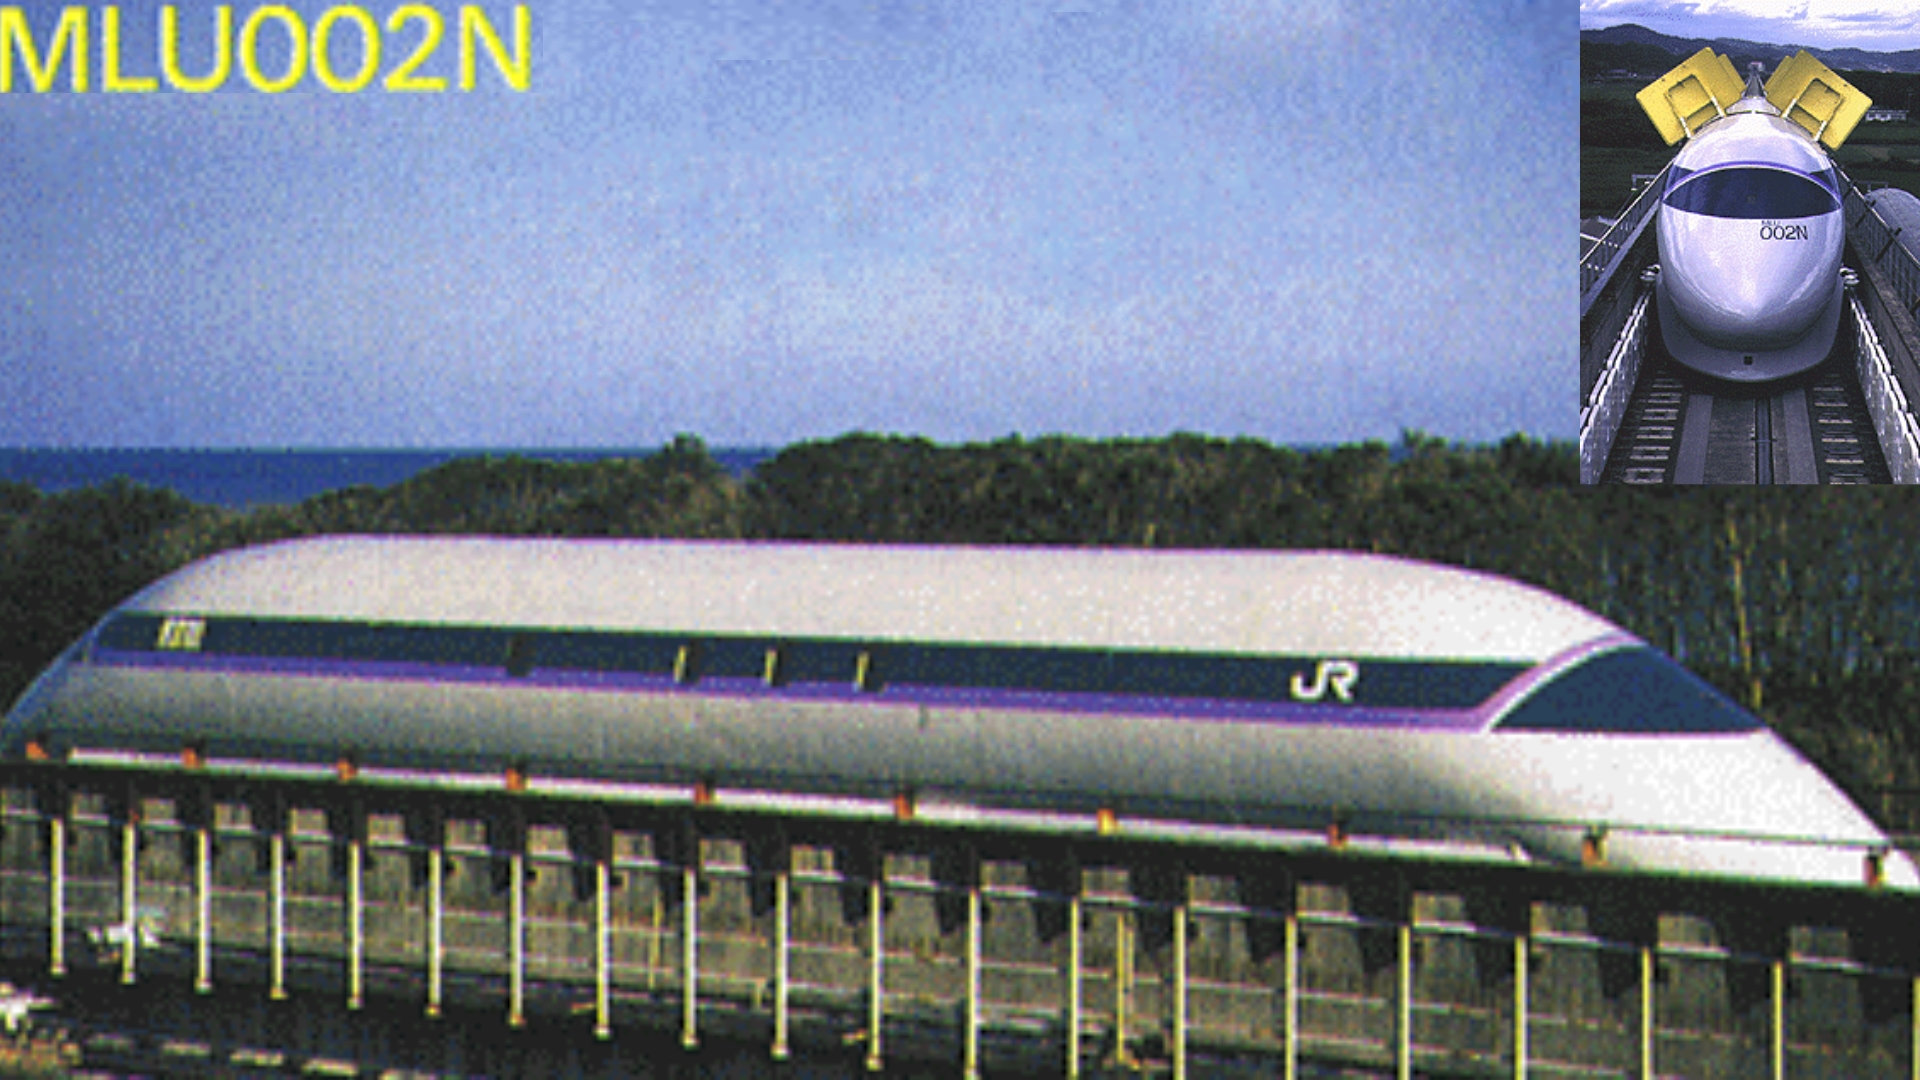 Die Baureihe MLU002N, die auf der Versuchsstrecke in Miyazaki unterwegs war.